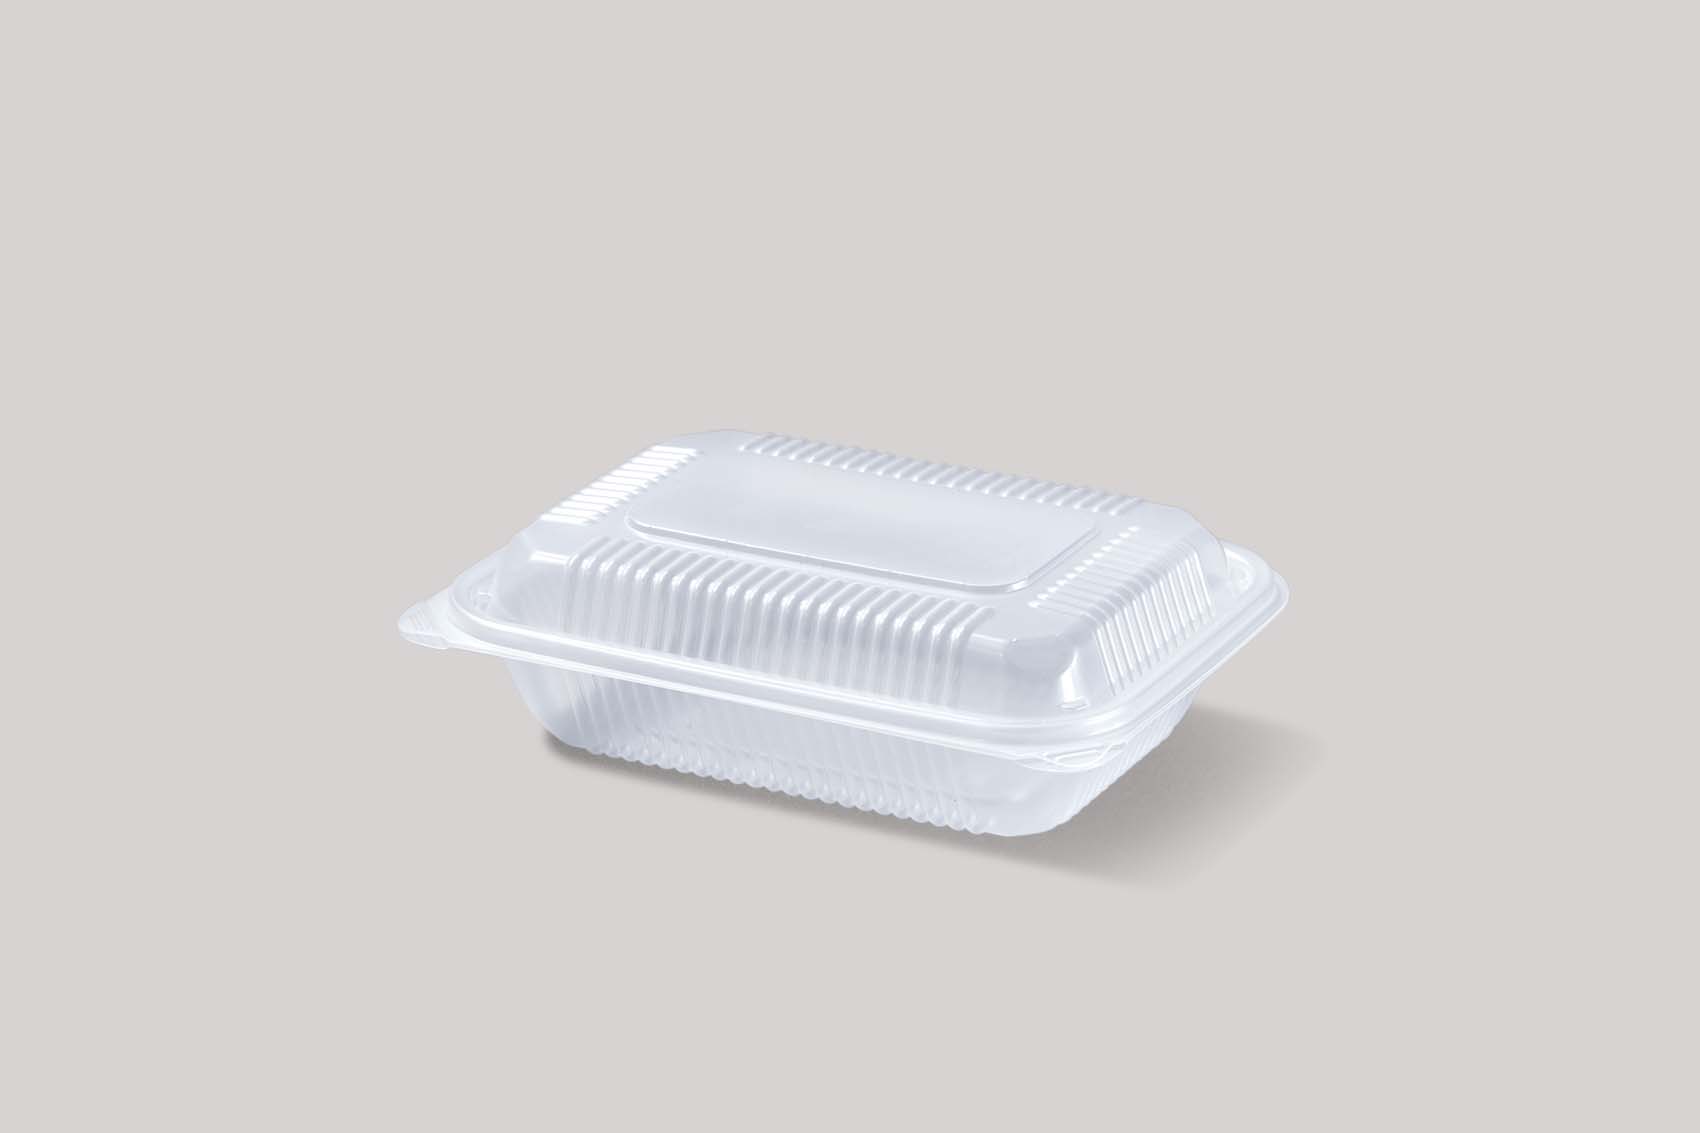 กล่องอาหารสี่เหลี่ยมฝาติด 1 ช่อง (TL-001)